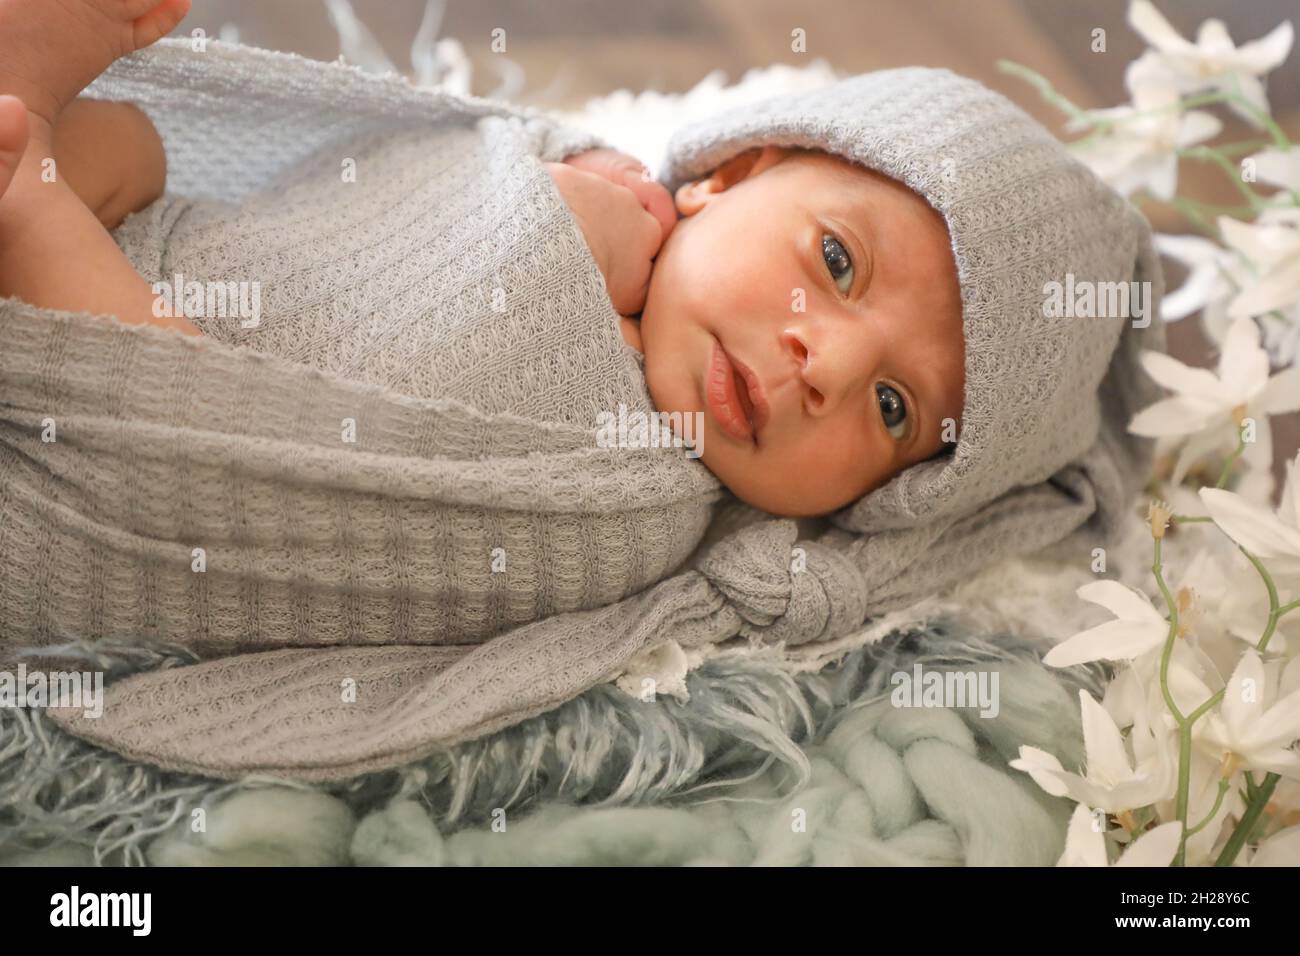 6 mesi bambina dolce arabo musulmana ragazza che posa e posa su una comoda lana cute viso vista dall'alto ritratto grigio sciarpa morbida Foto Stock